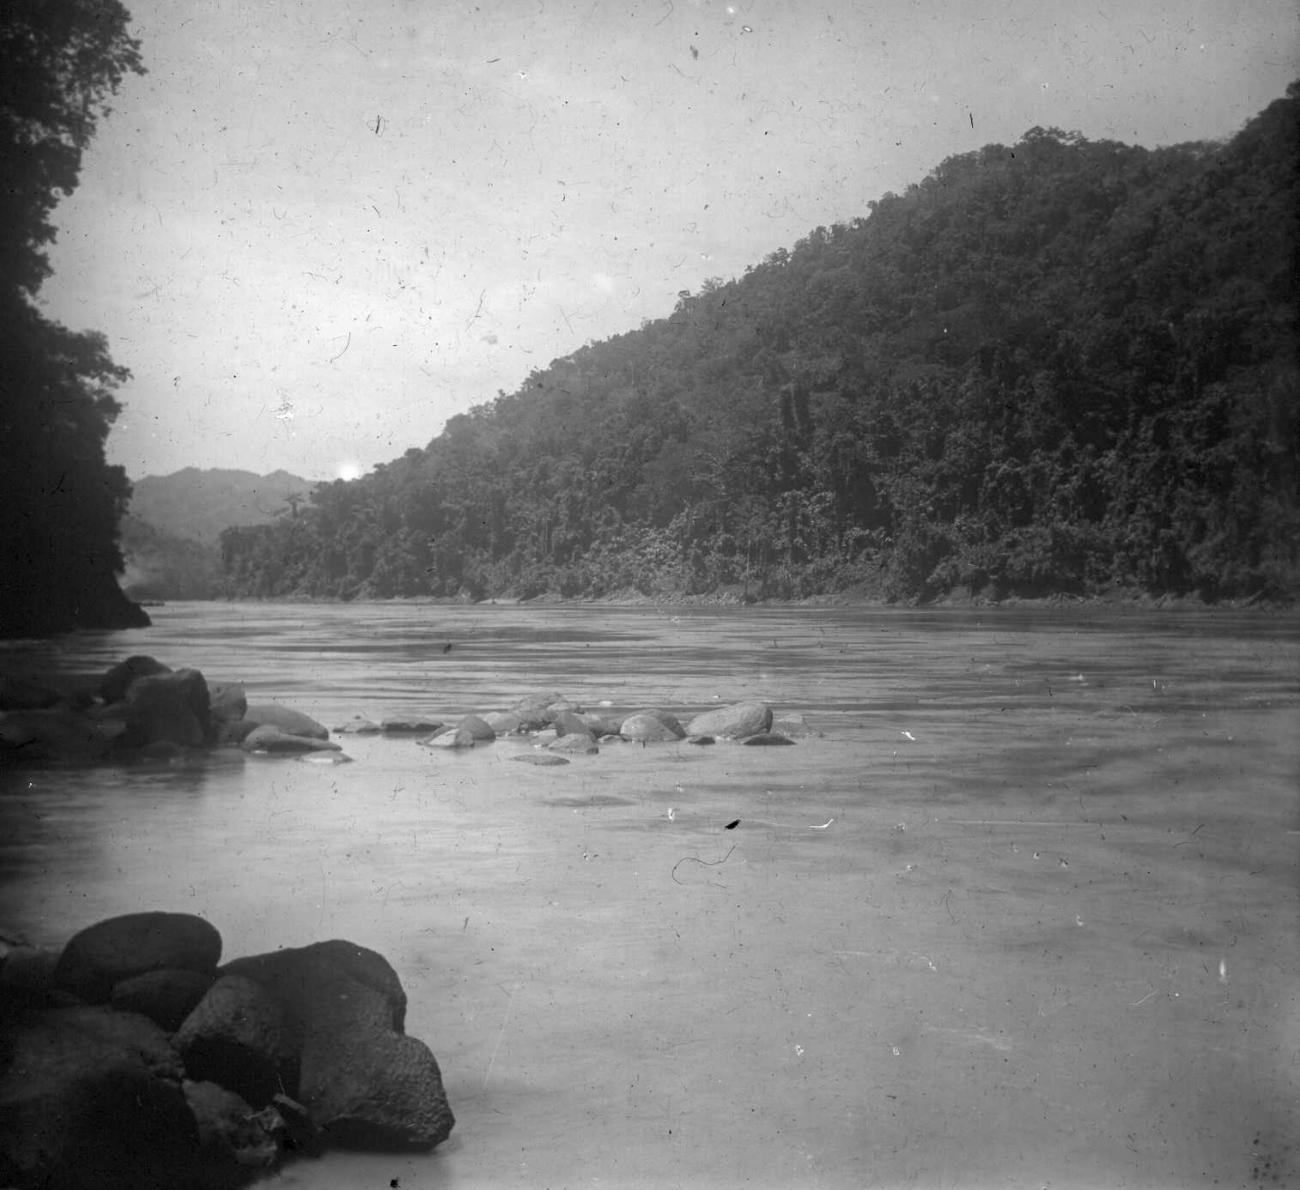 BD/66/448 - 
Zicht op de Mamberamorivier tussen de Edi- en Bataviastroomversnellingen stroomafwaarts gezien tijdens de expeditie van 1921/1922
